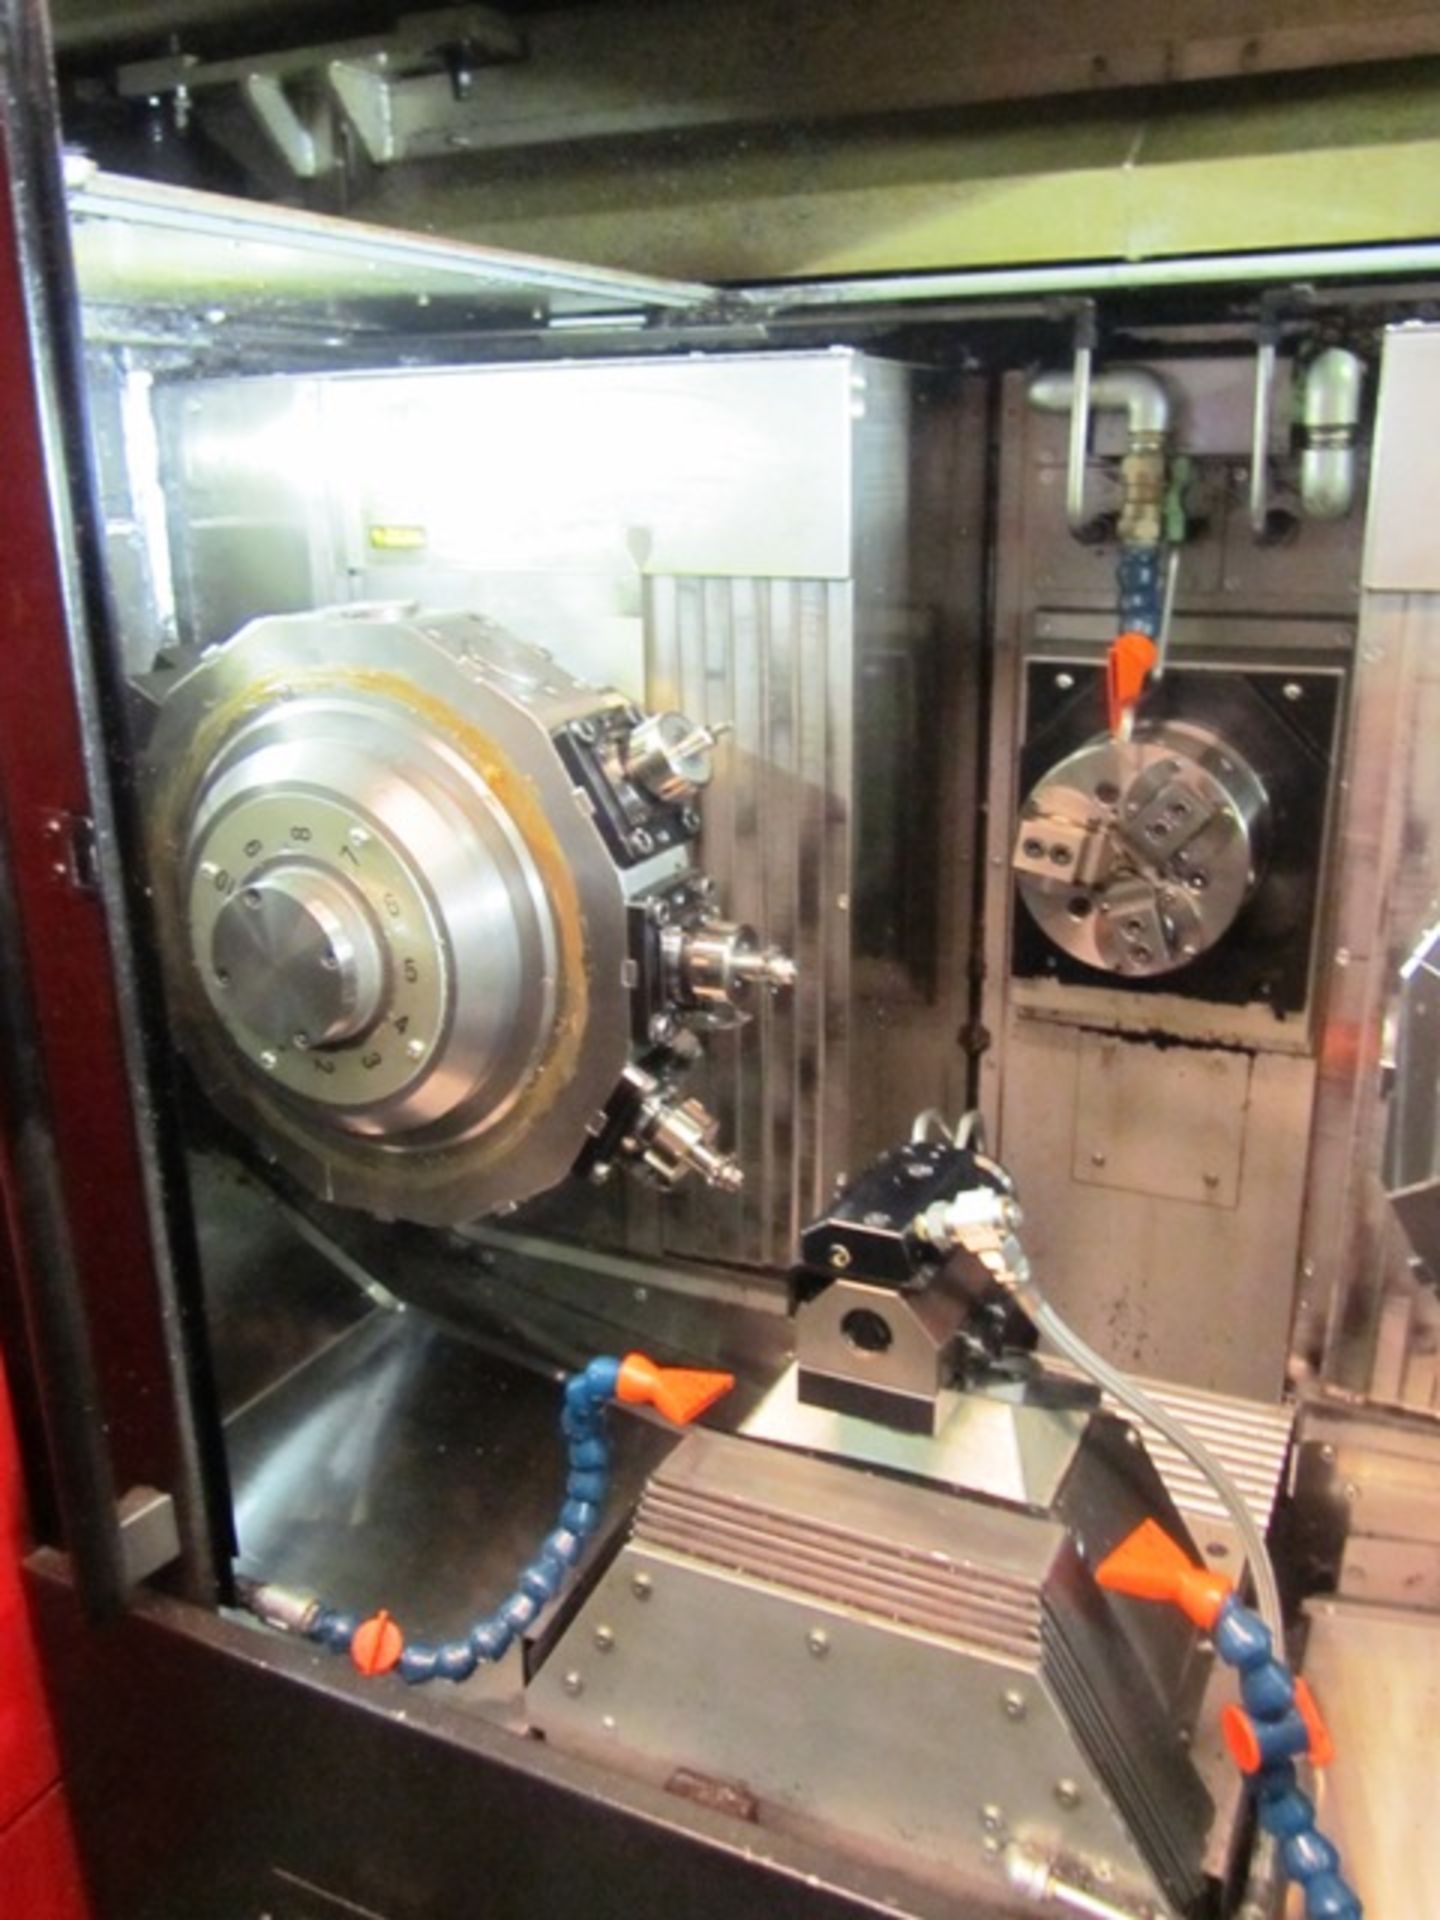 DMG Mori Wasino (Amada Wasino) S10 CNC Multi-Tasking Turning & Milling Center - Bild 4 aus 5